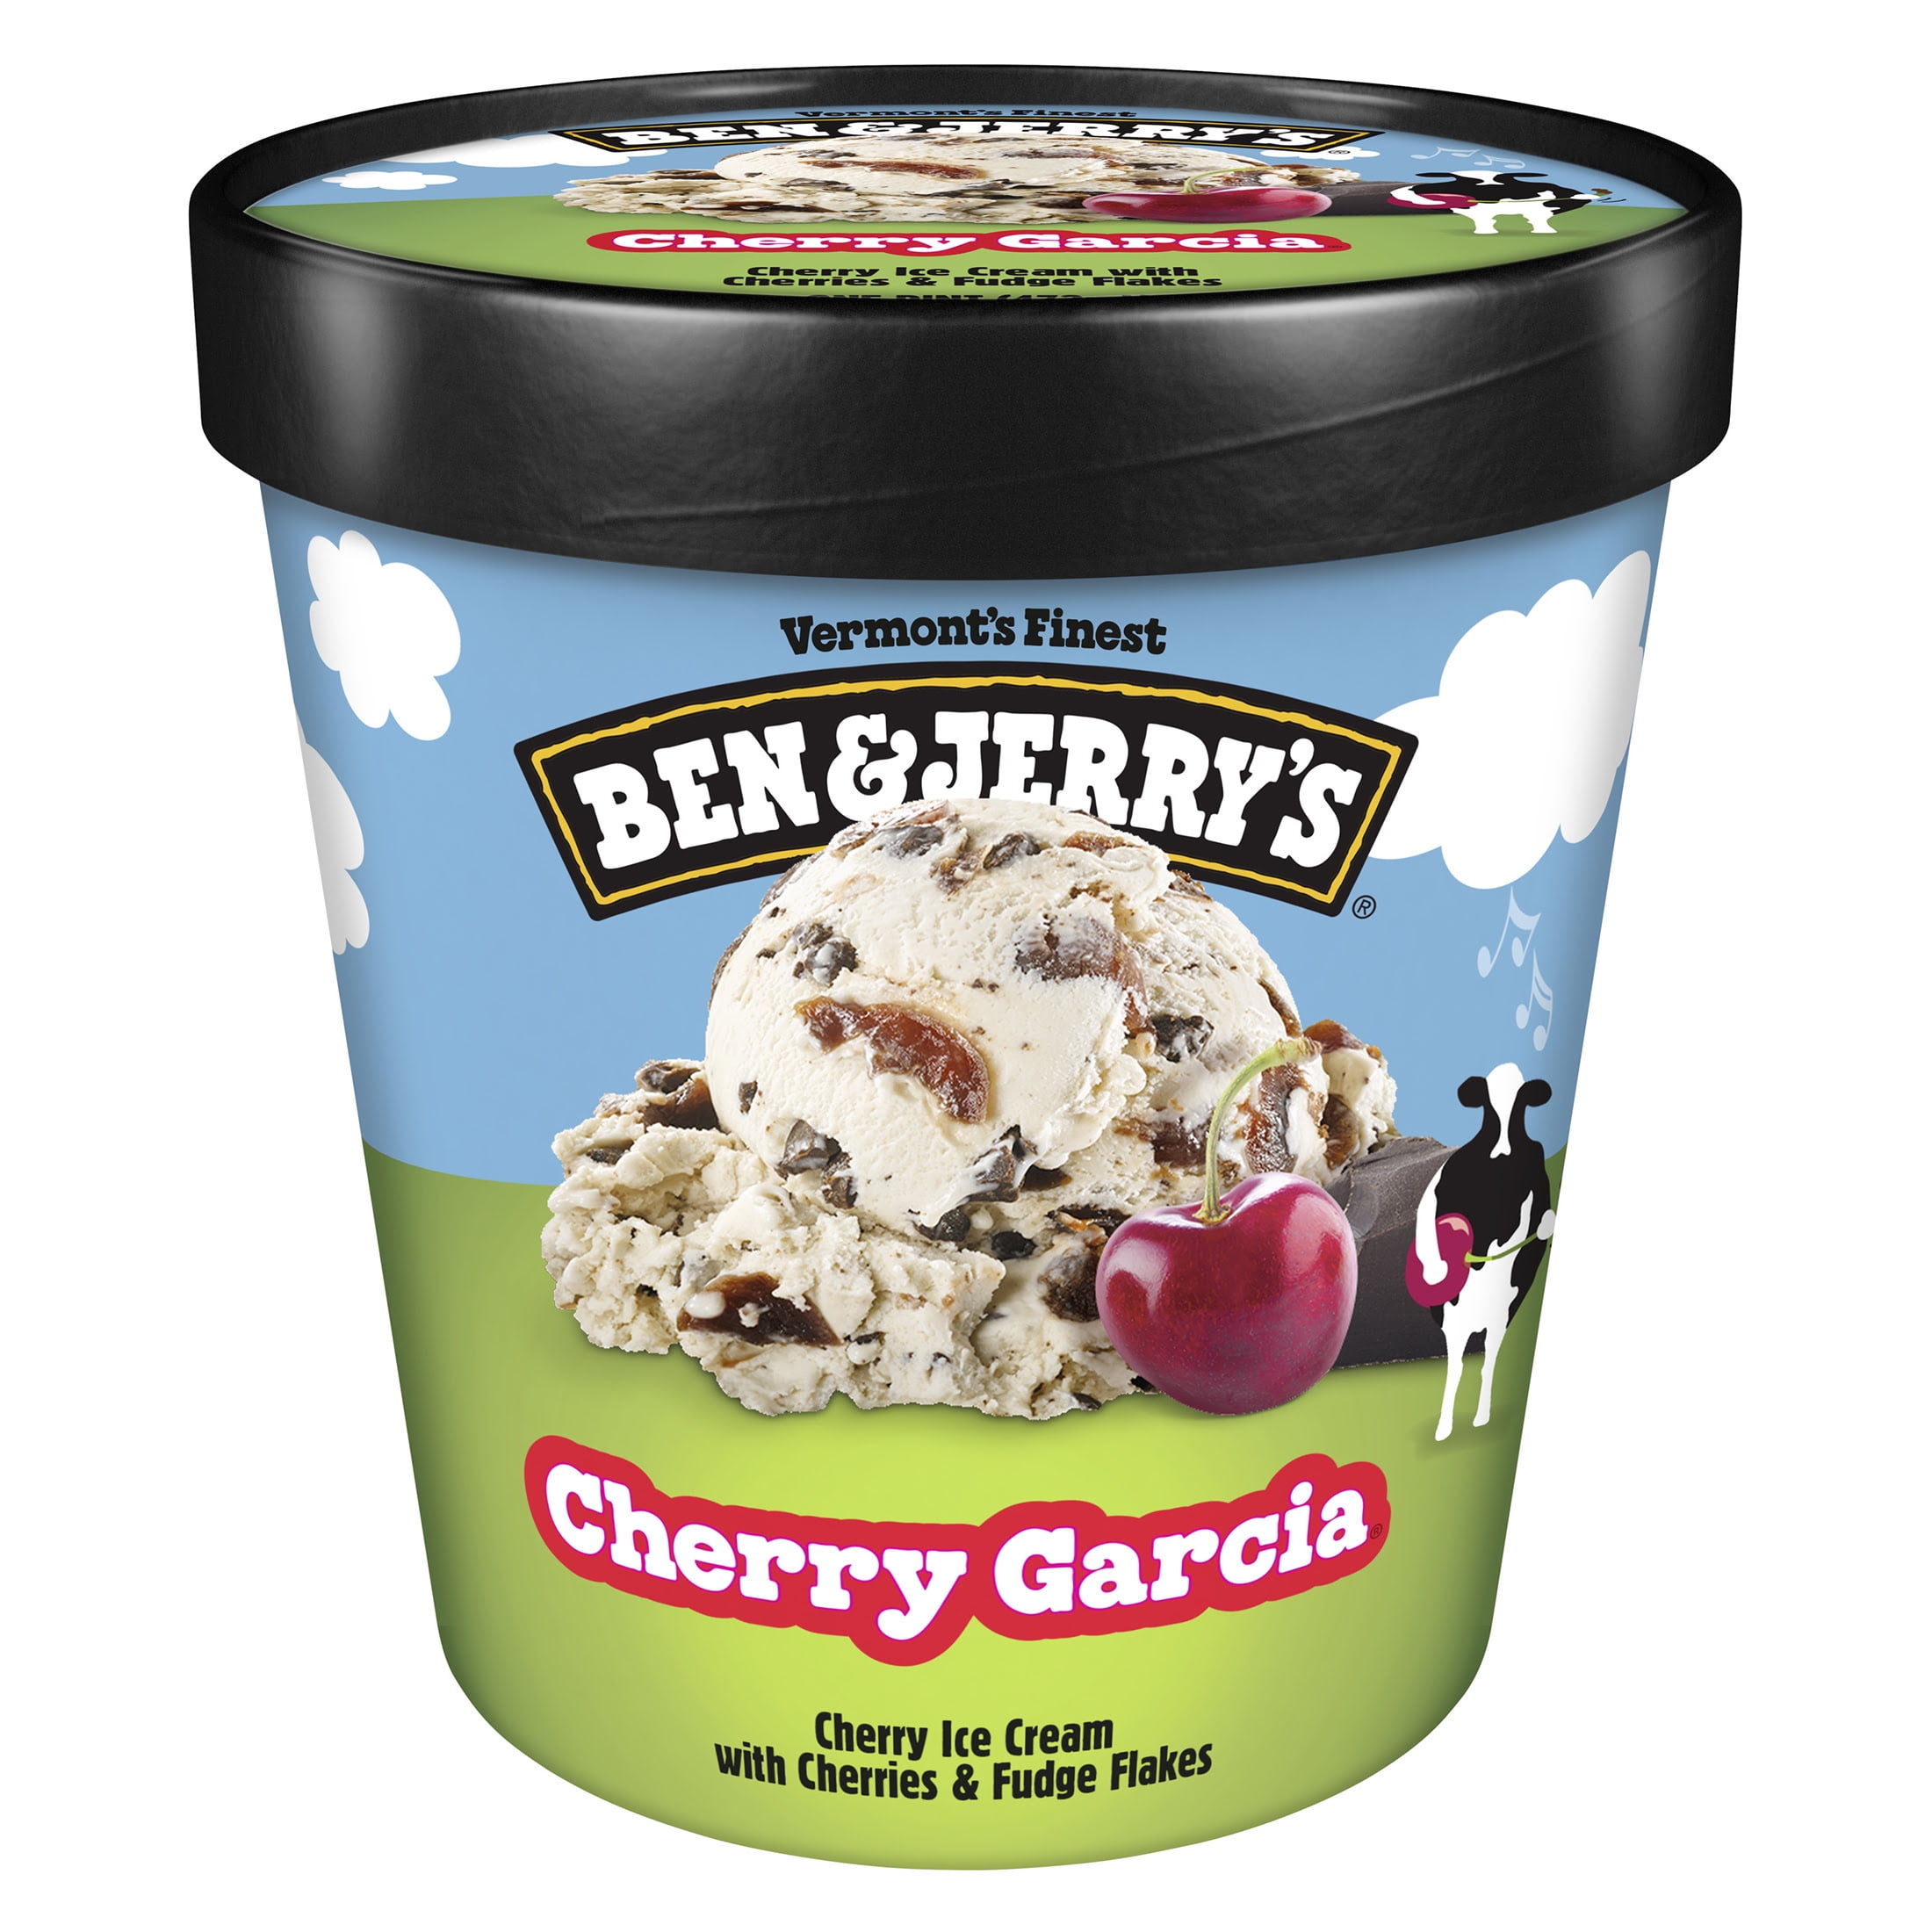 Ben & Jerry's Cherry Garcia Ice Cream Pint 16 oz